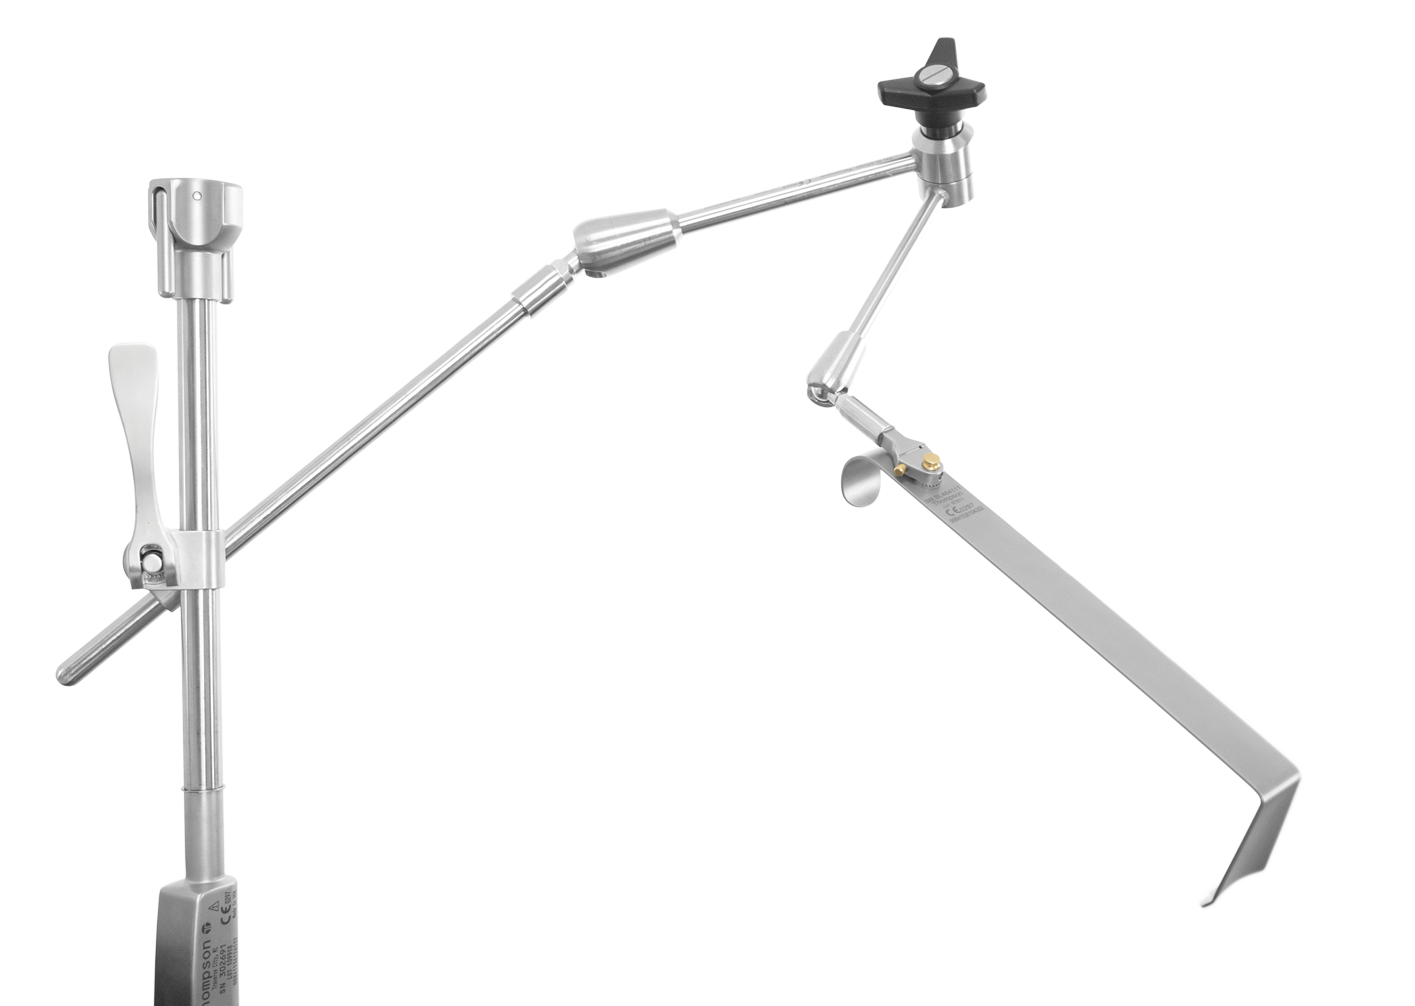 S-Lock Articulating Arm + Hibbs Blade Kit